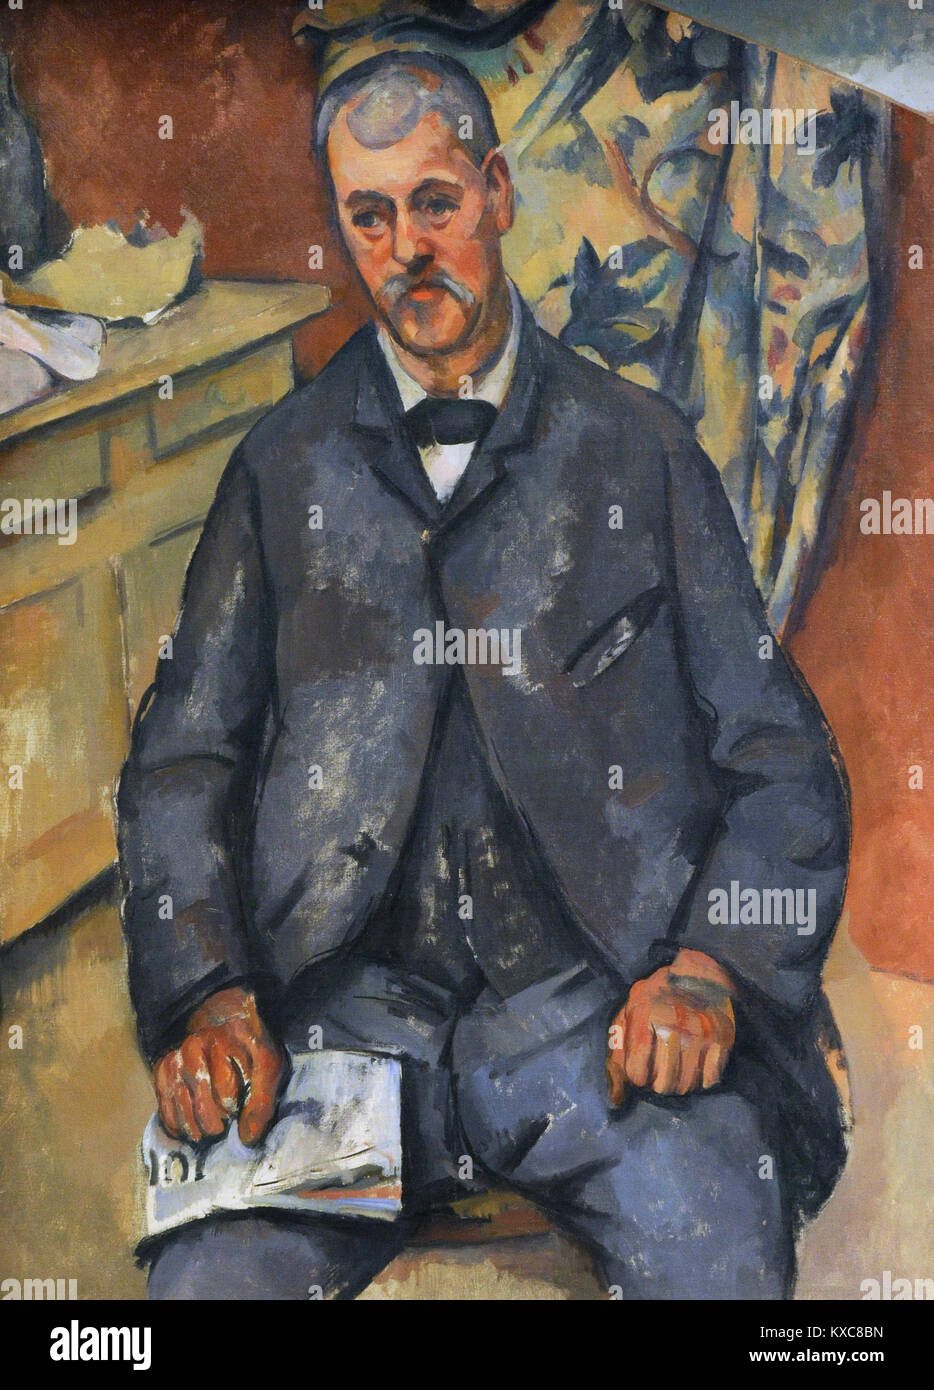 Paul Cézanne (1839-1906). Le peintre français. Homme assis, 1898-1900. Galerie nationale. Oslo. La Norvège. Banque D'Images